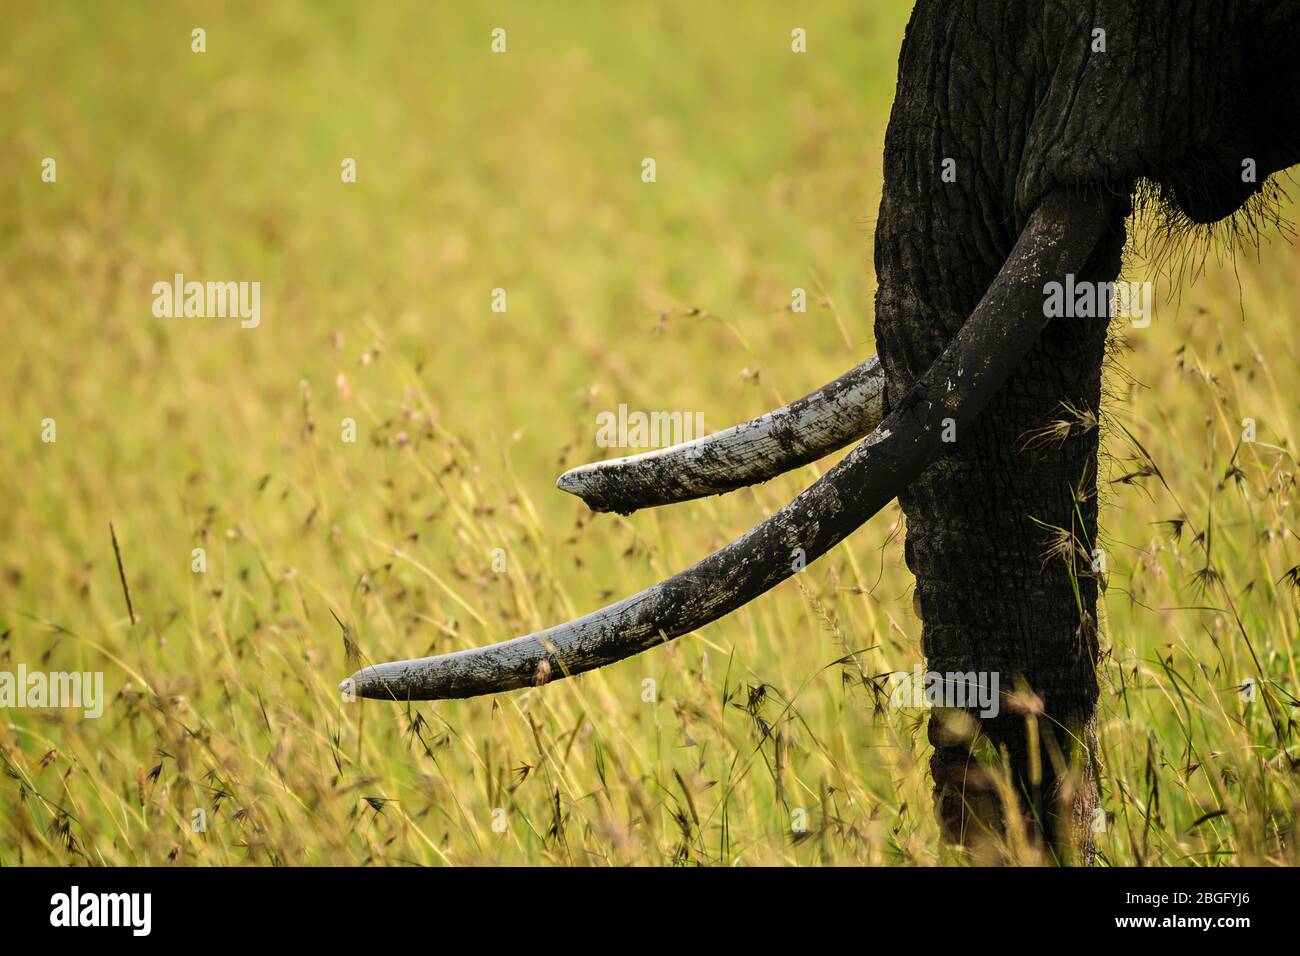 Tronco y colmillos de elefante, Maasai Mara, Kenya Foto de stock